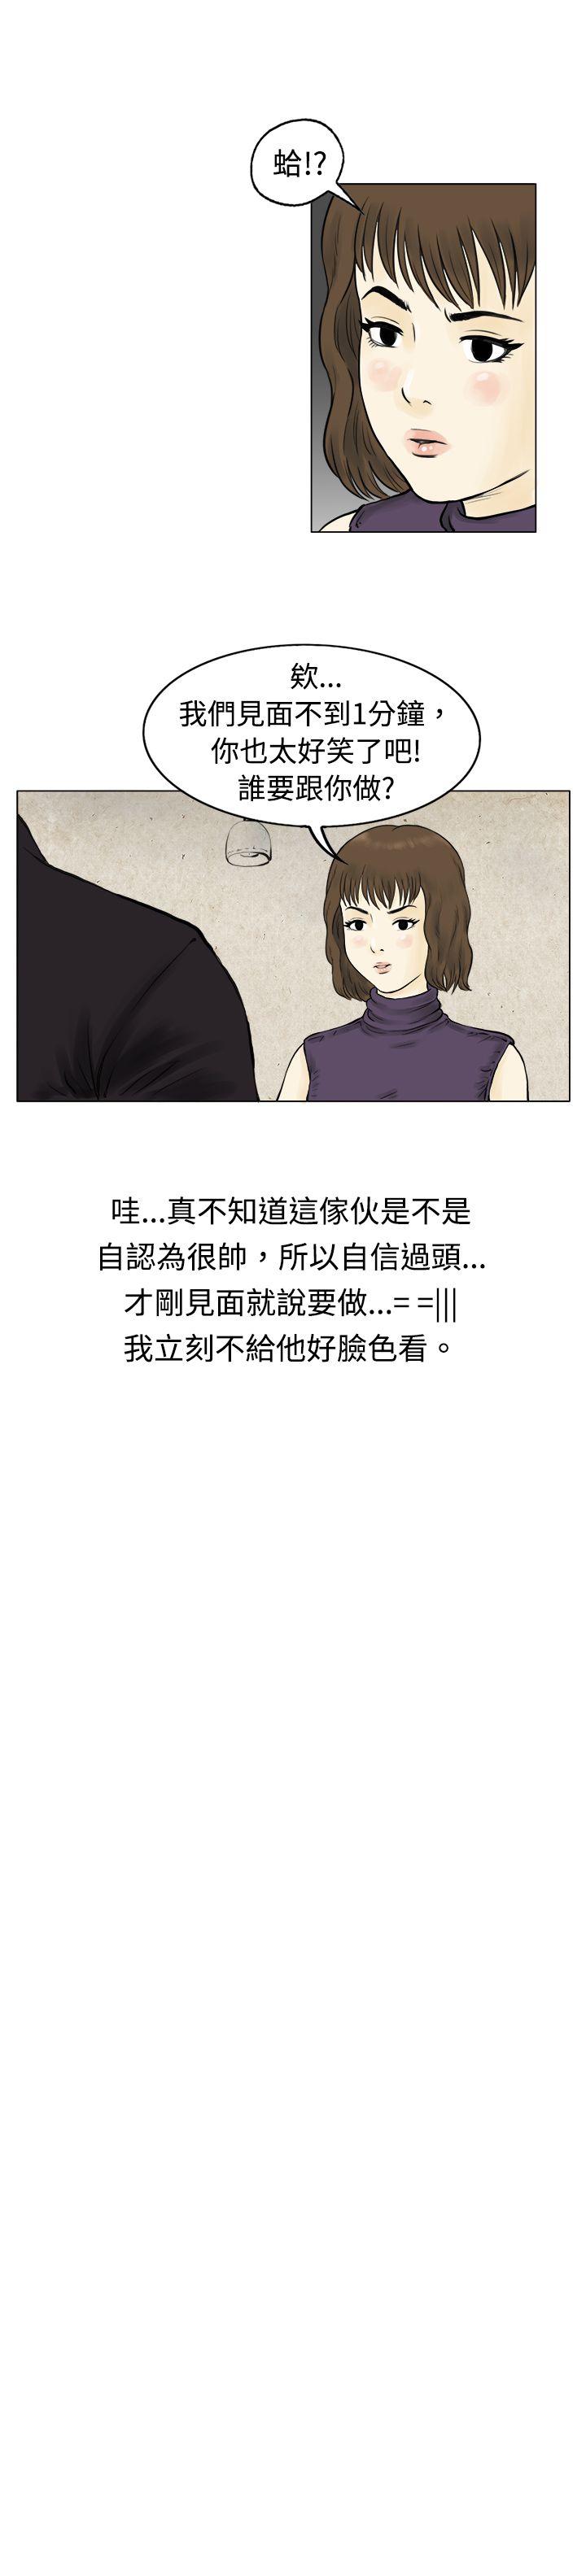 韩国污漫画 秘密Story 遇到渣男的旅馆逃亡记(上) 4